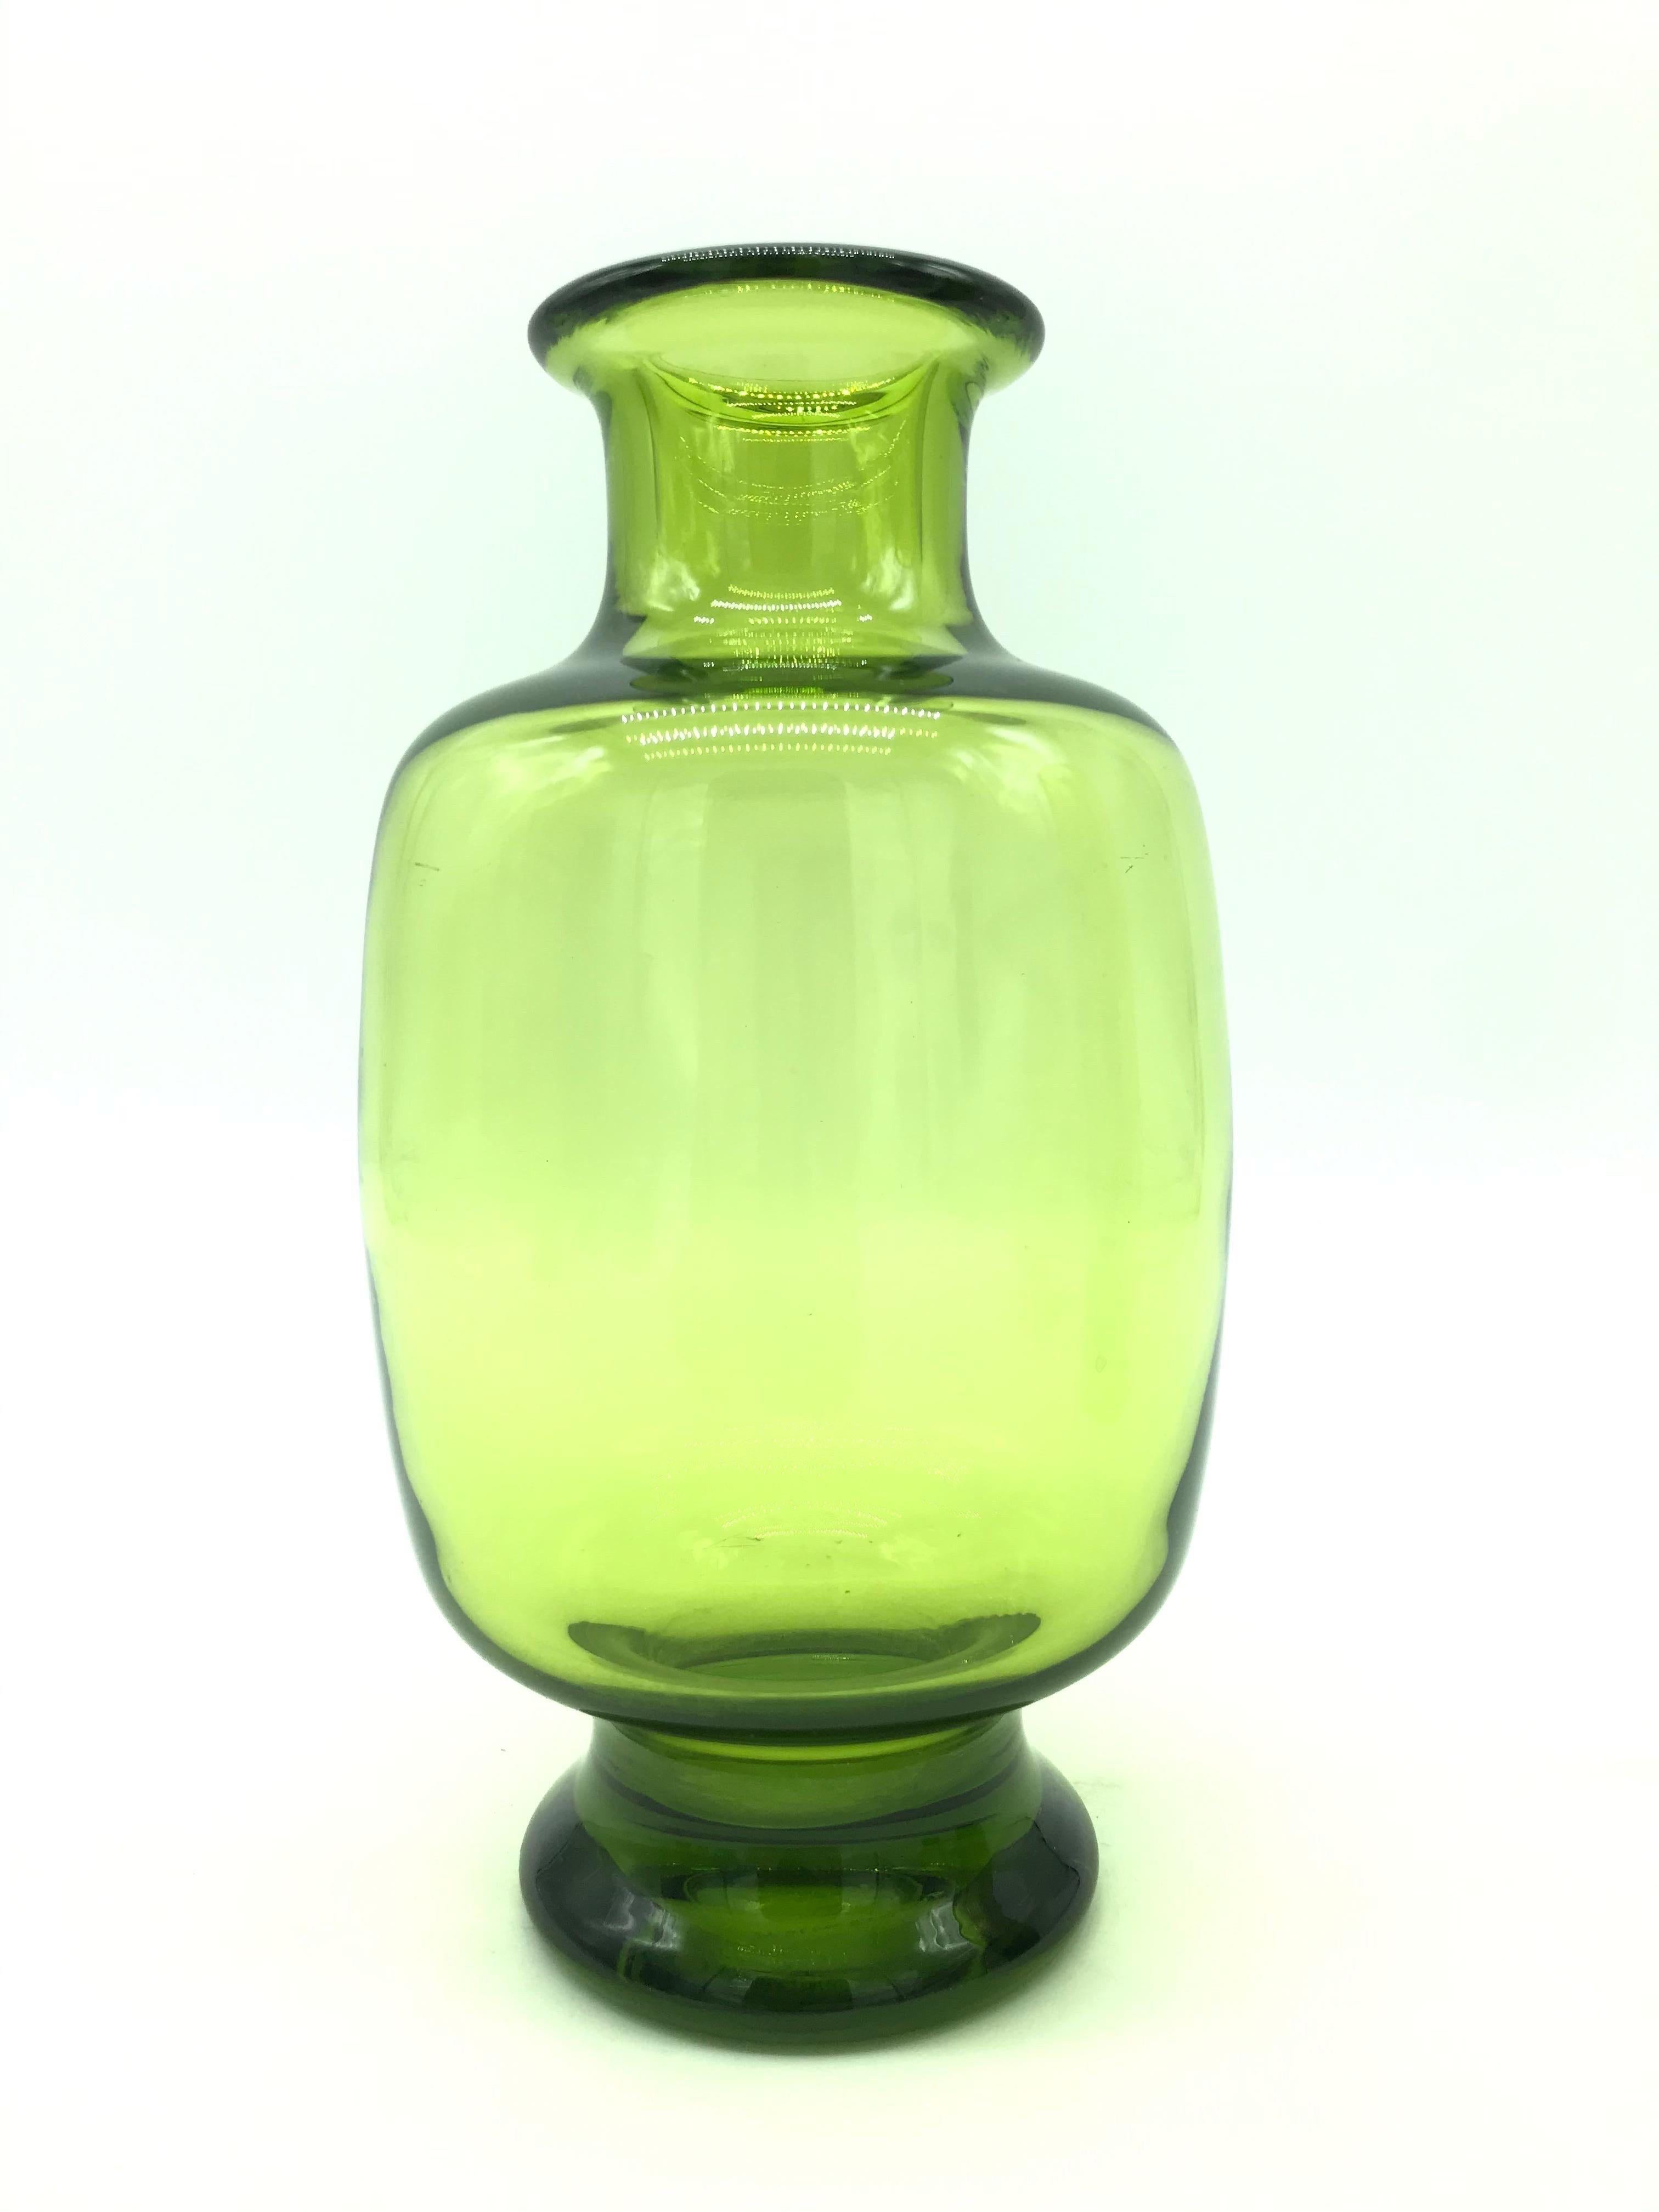 Ein seltenes Set von Royal Copenhagen Vasen entworfen von Per Lutkin für Holmegaard in einem schönen grün getönten mundgeblasenem Glas.
Alle signiert und graviert.
Per Lütken war ein dänischer Glasmacher, der vor allem durch seine Arbeiten in der